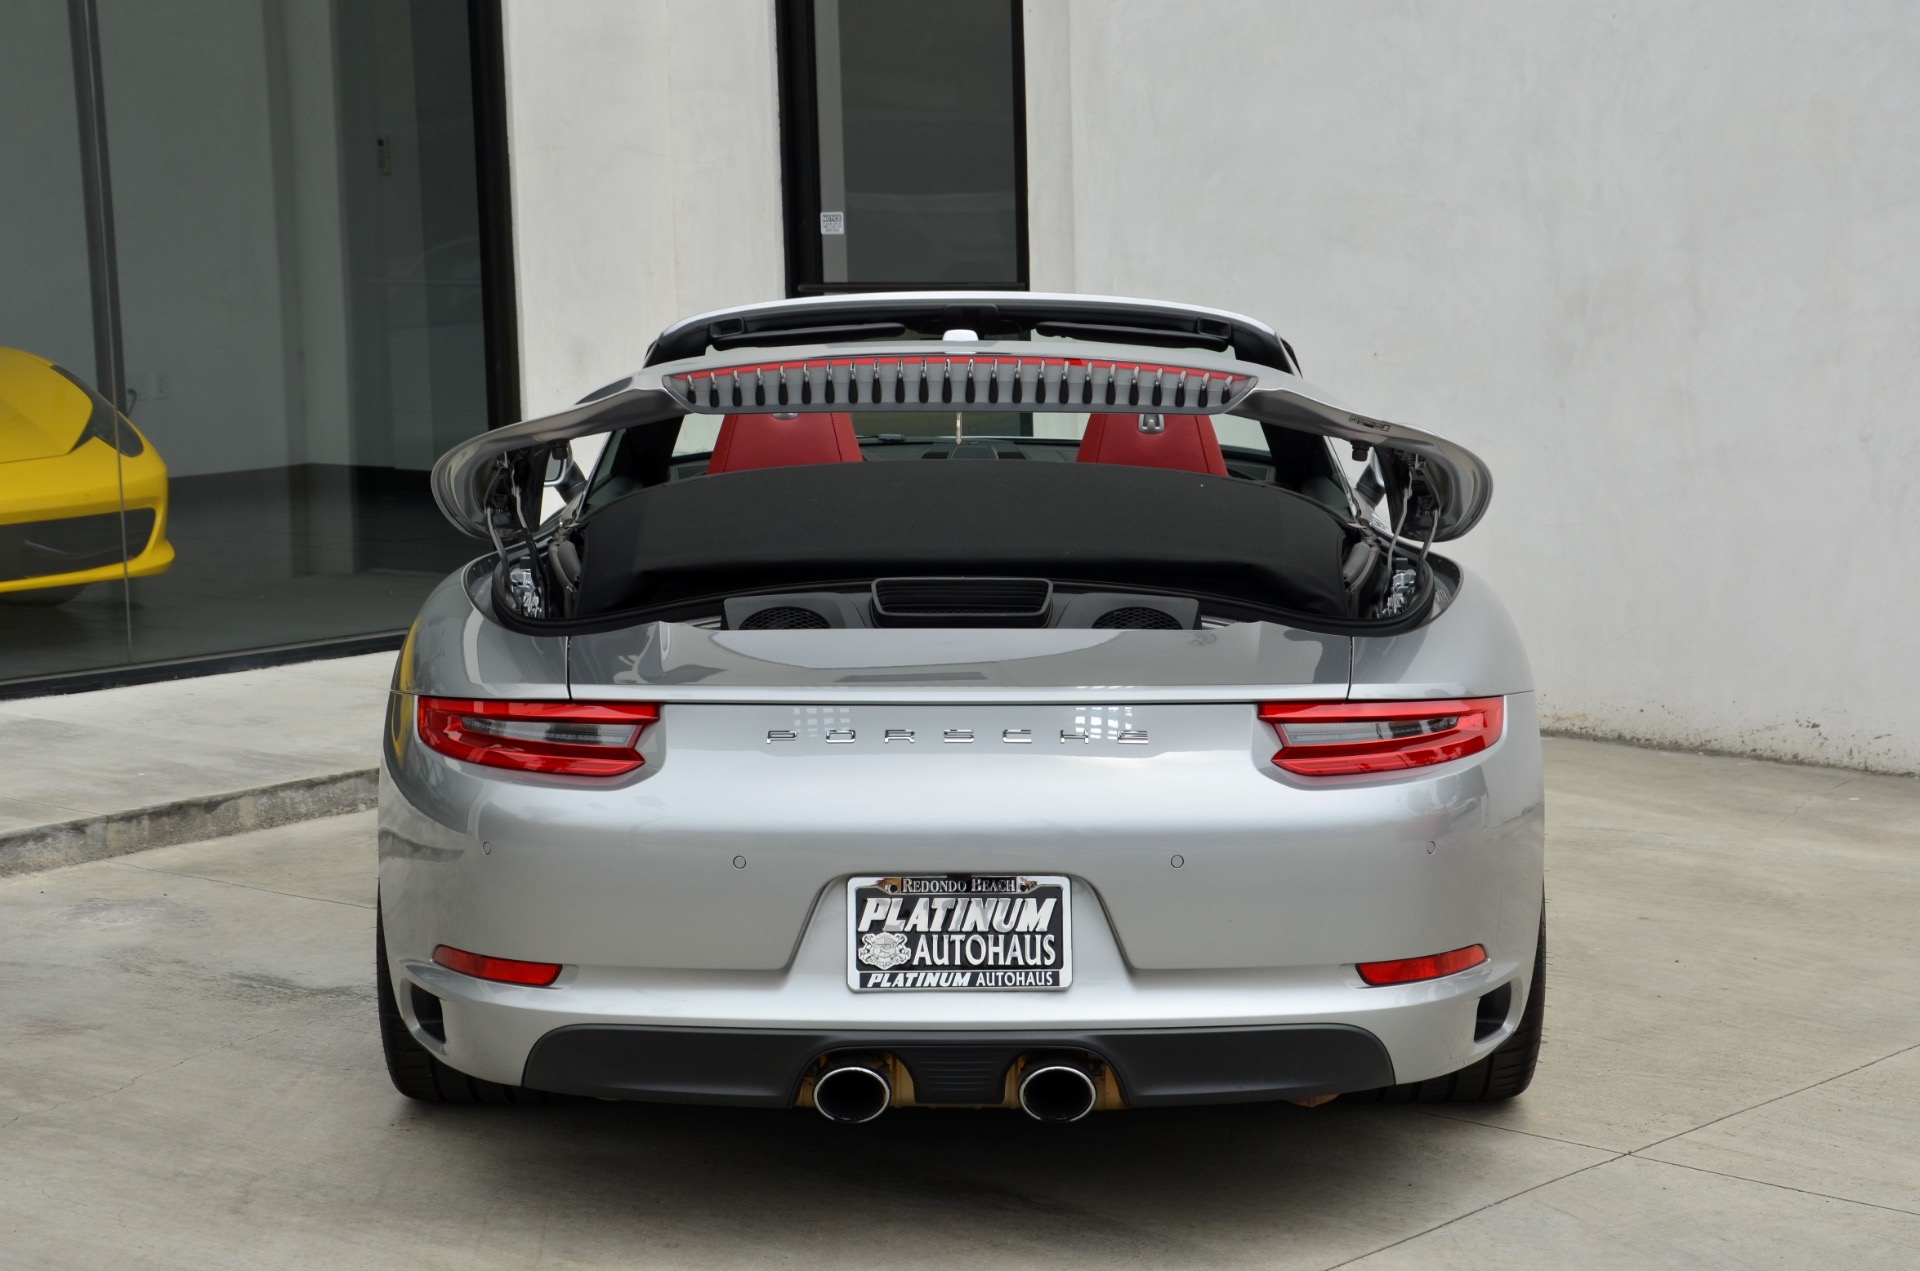 Used-2019-Porsche-911-Carrera